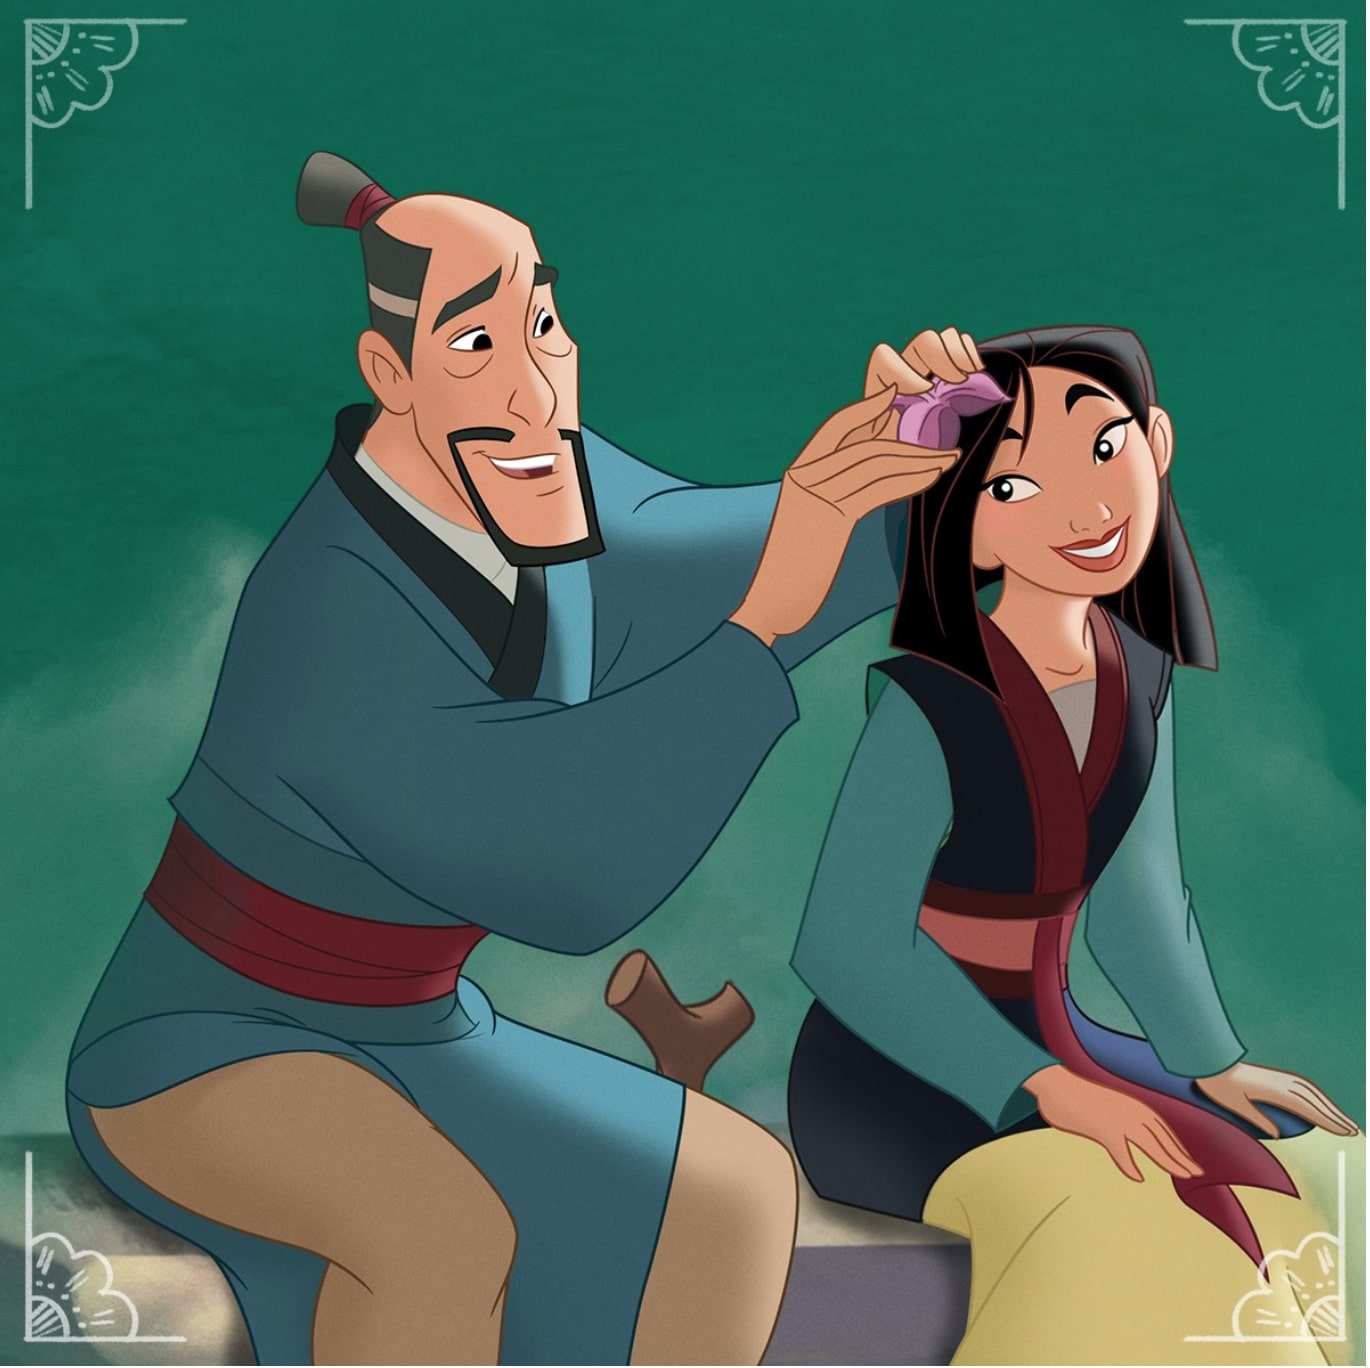 The 1998 ‘Mulan’ Disney animated movie